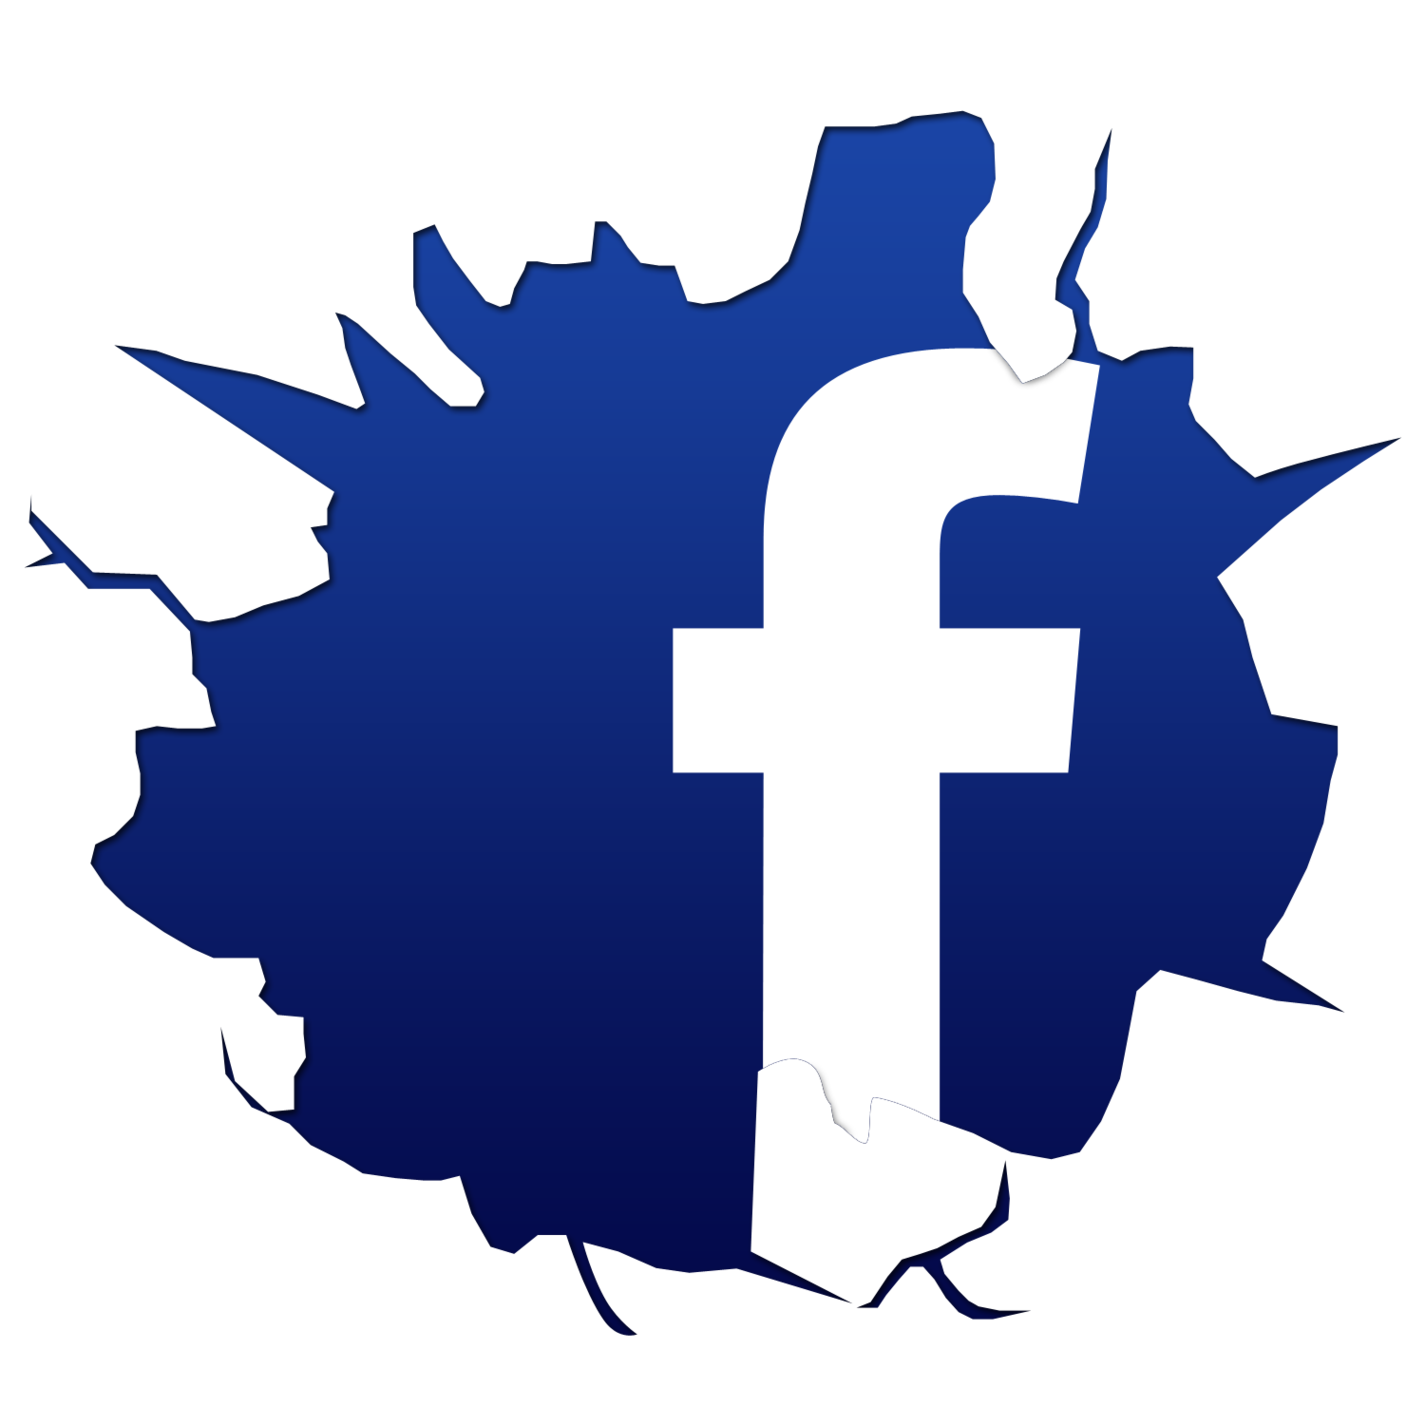 facebook logo clip art free - photo #21